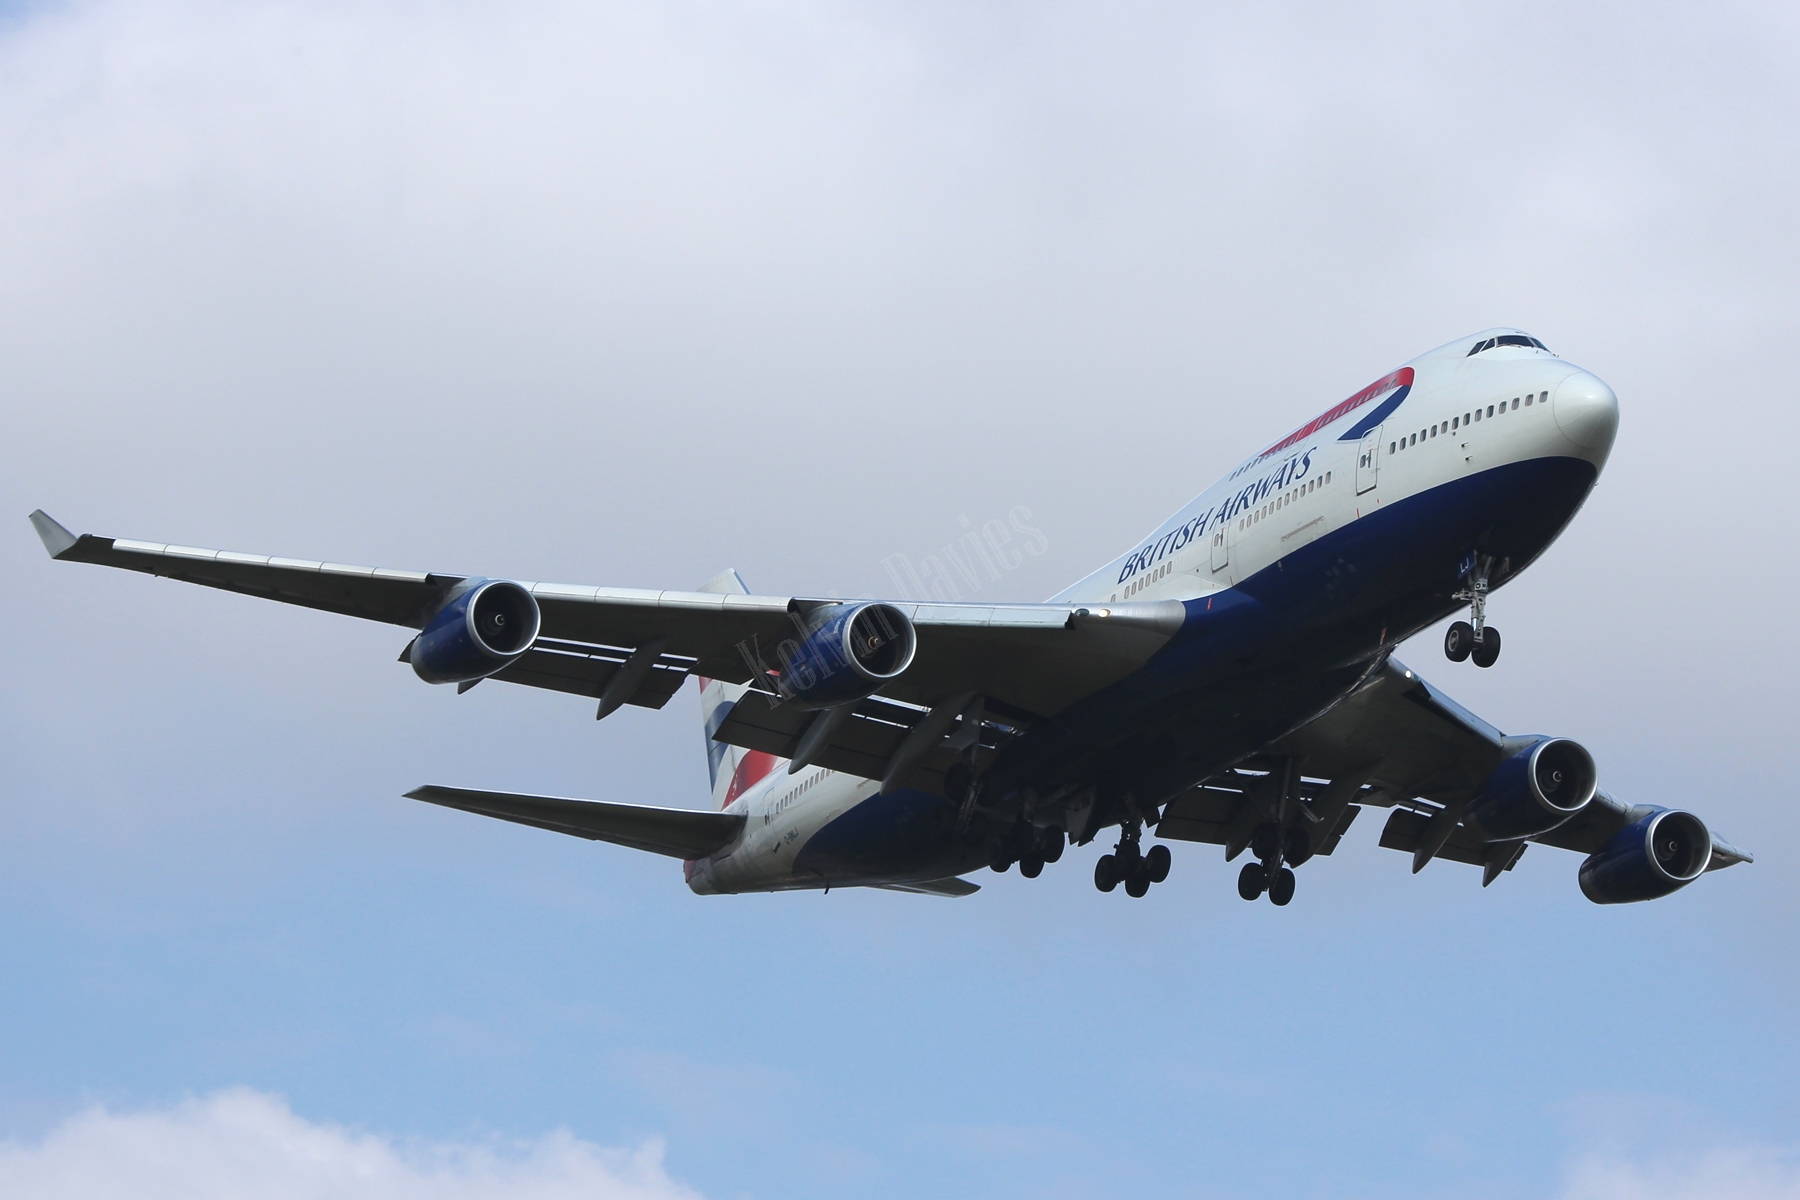 British Airways 747 G-BNLJ